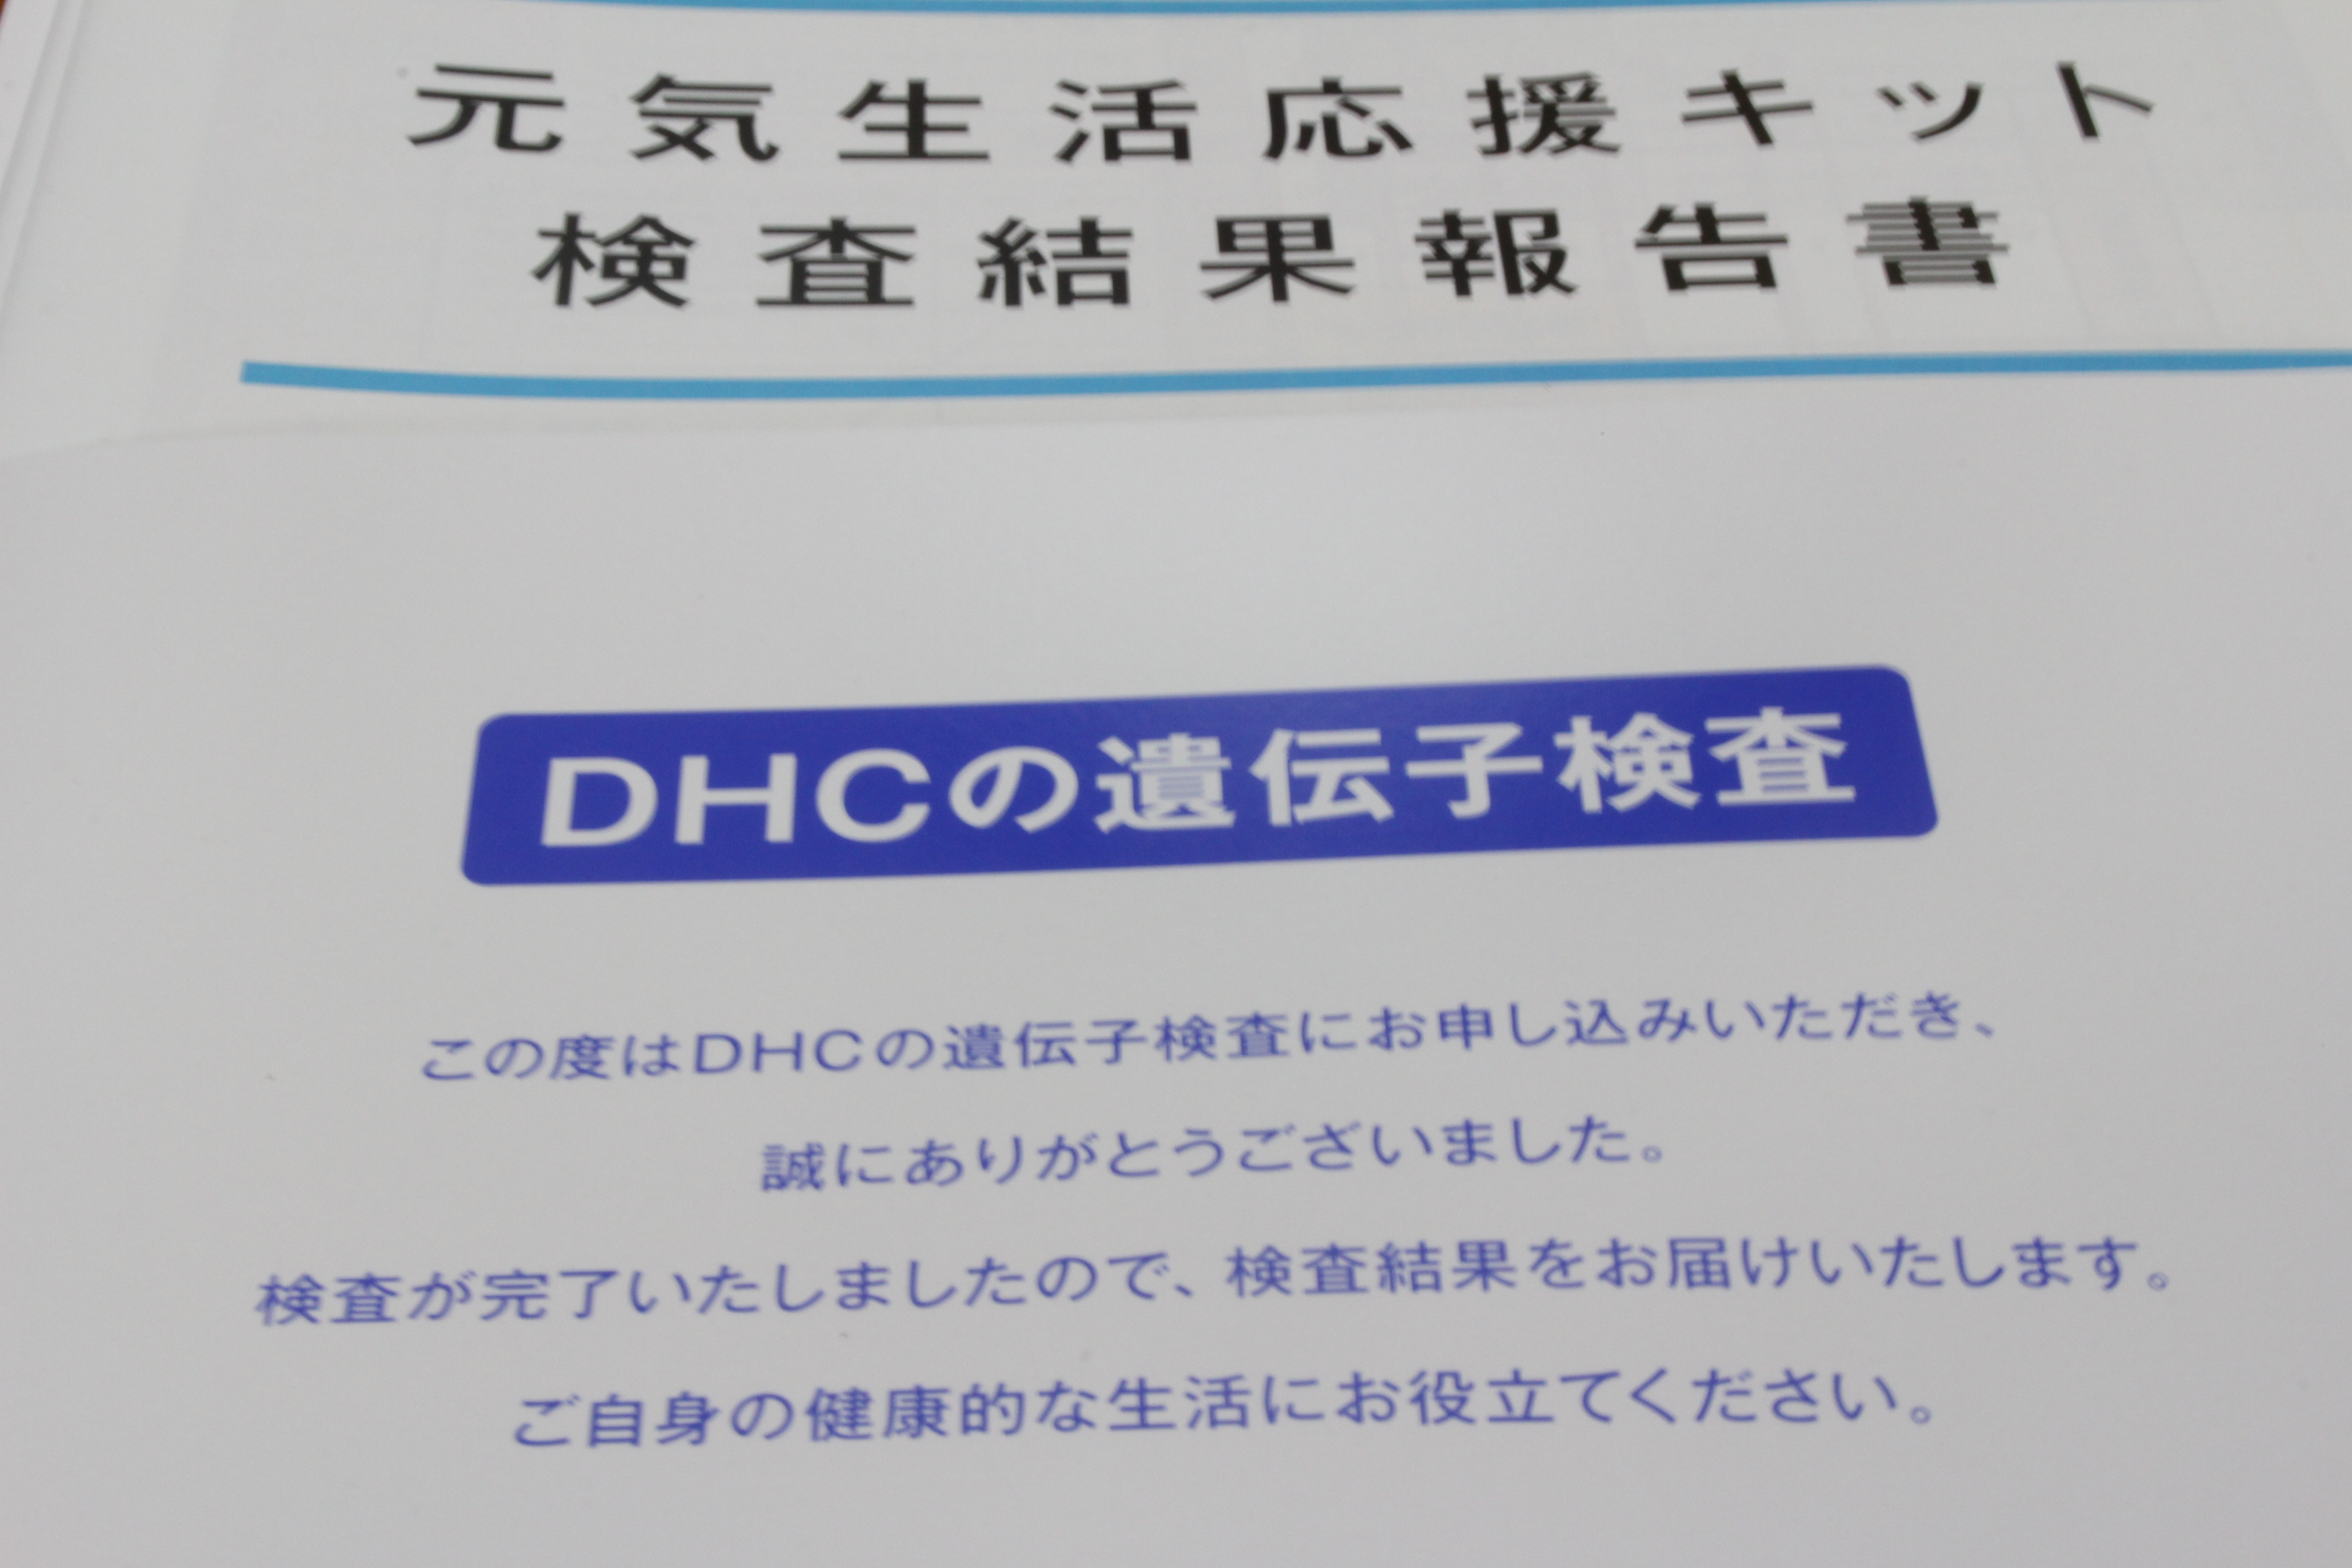 DHC 遺伝子検査